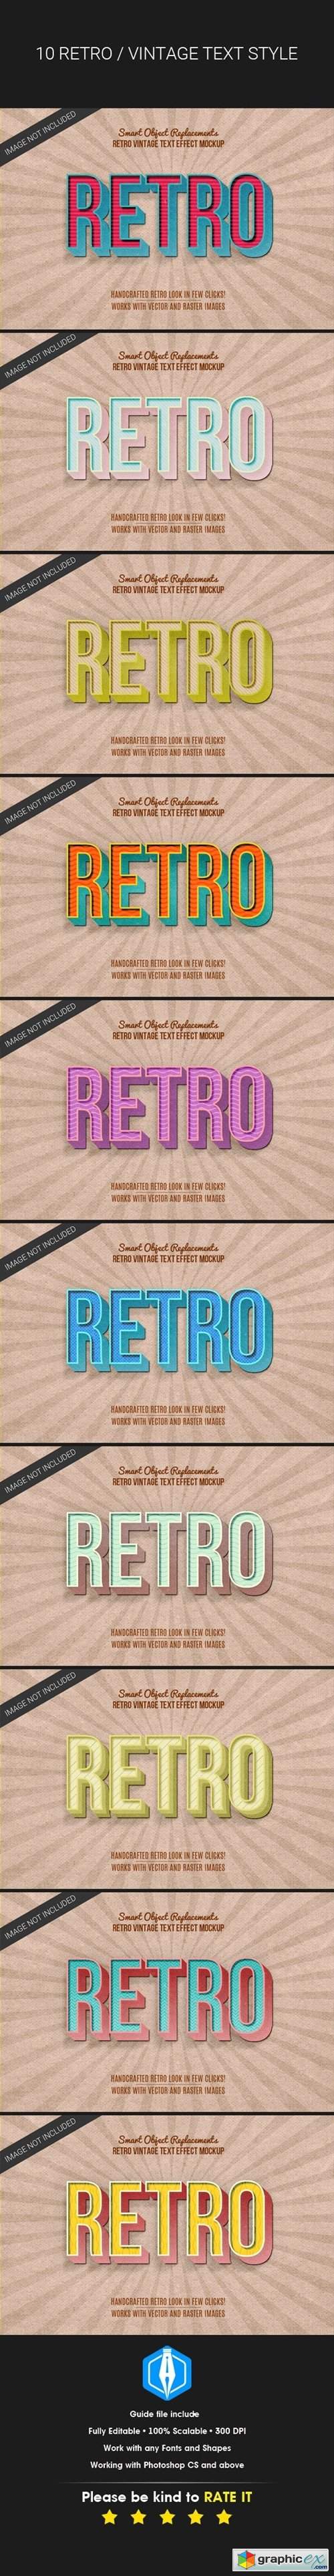 3D Retro Vintage Text Effects